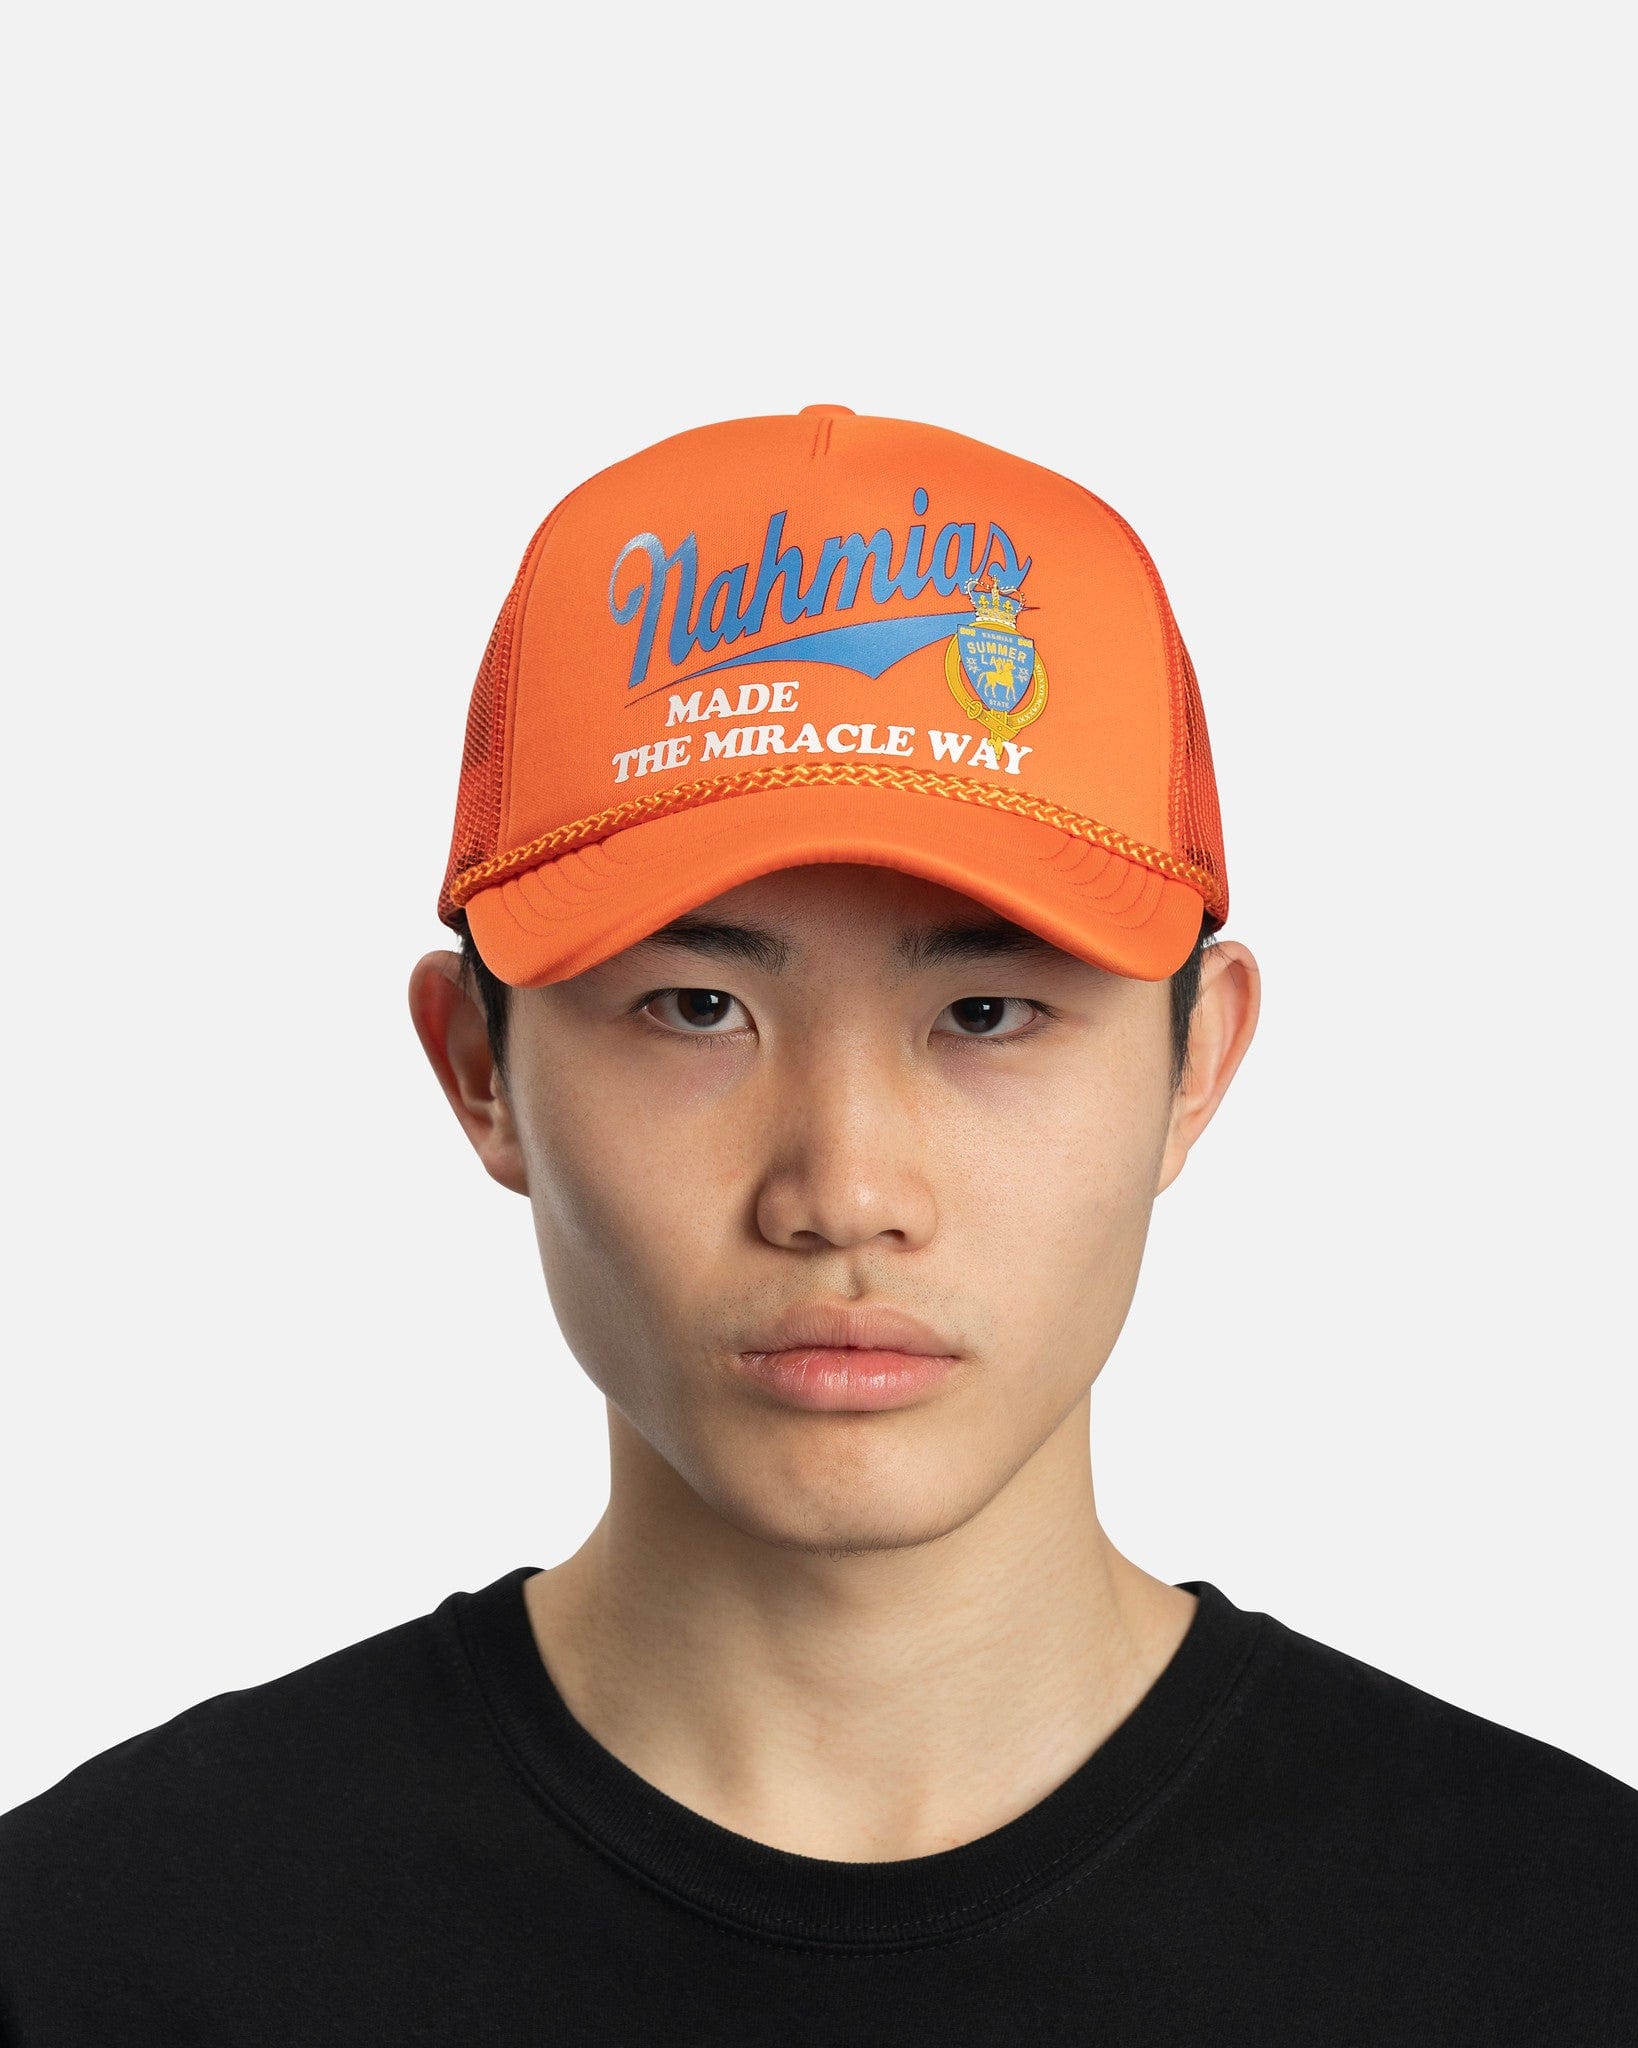 Nahmias Men's Hats Miller Way Foam Trucker Hat in Orange/Blue